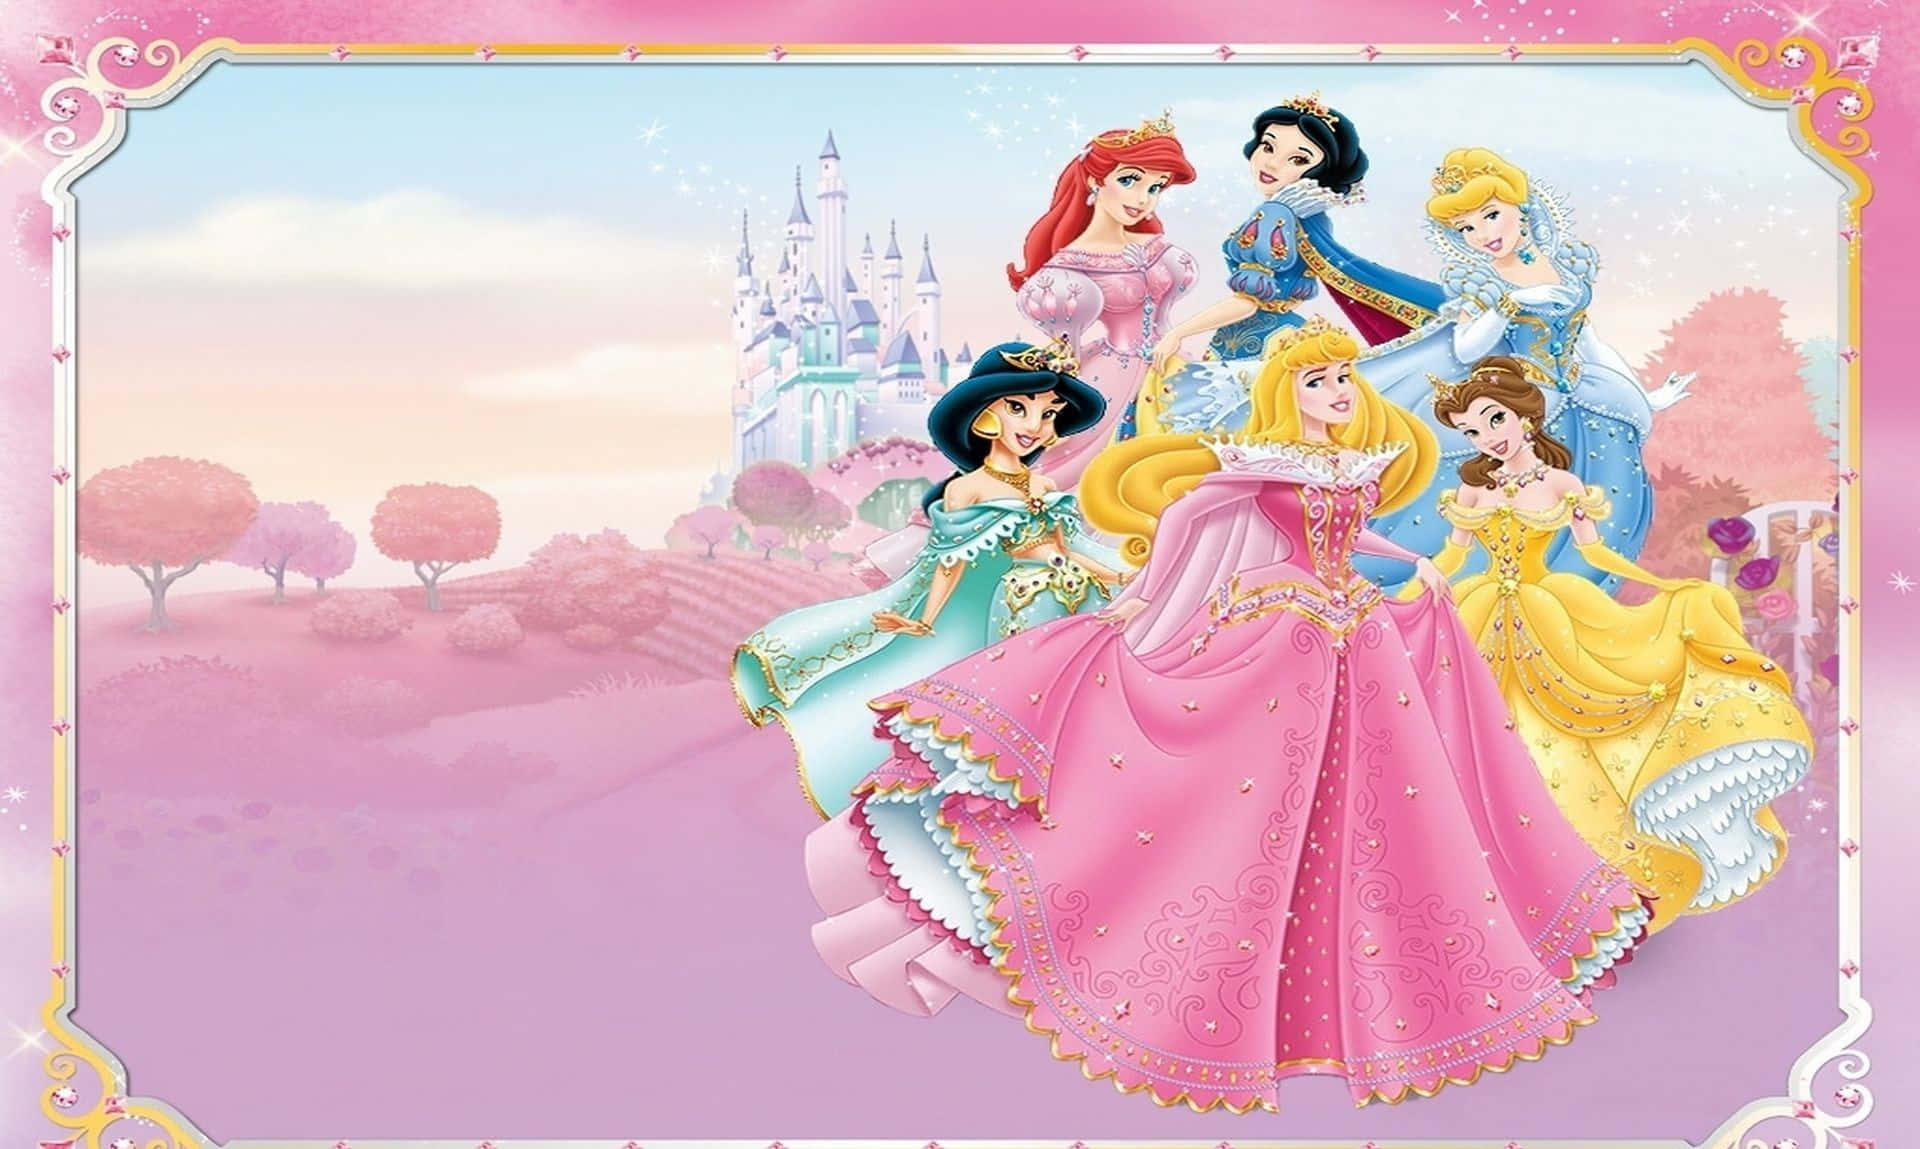 Imagende Los Castillos De Las Princesas De Disney Y Flores De Cerezo